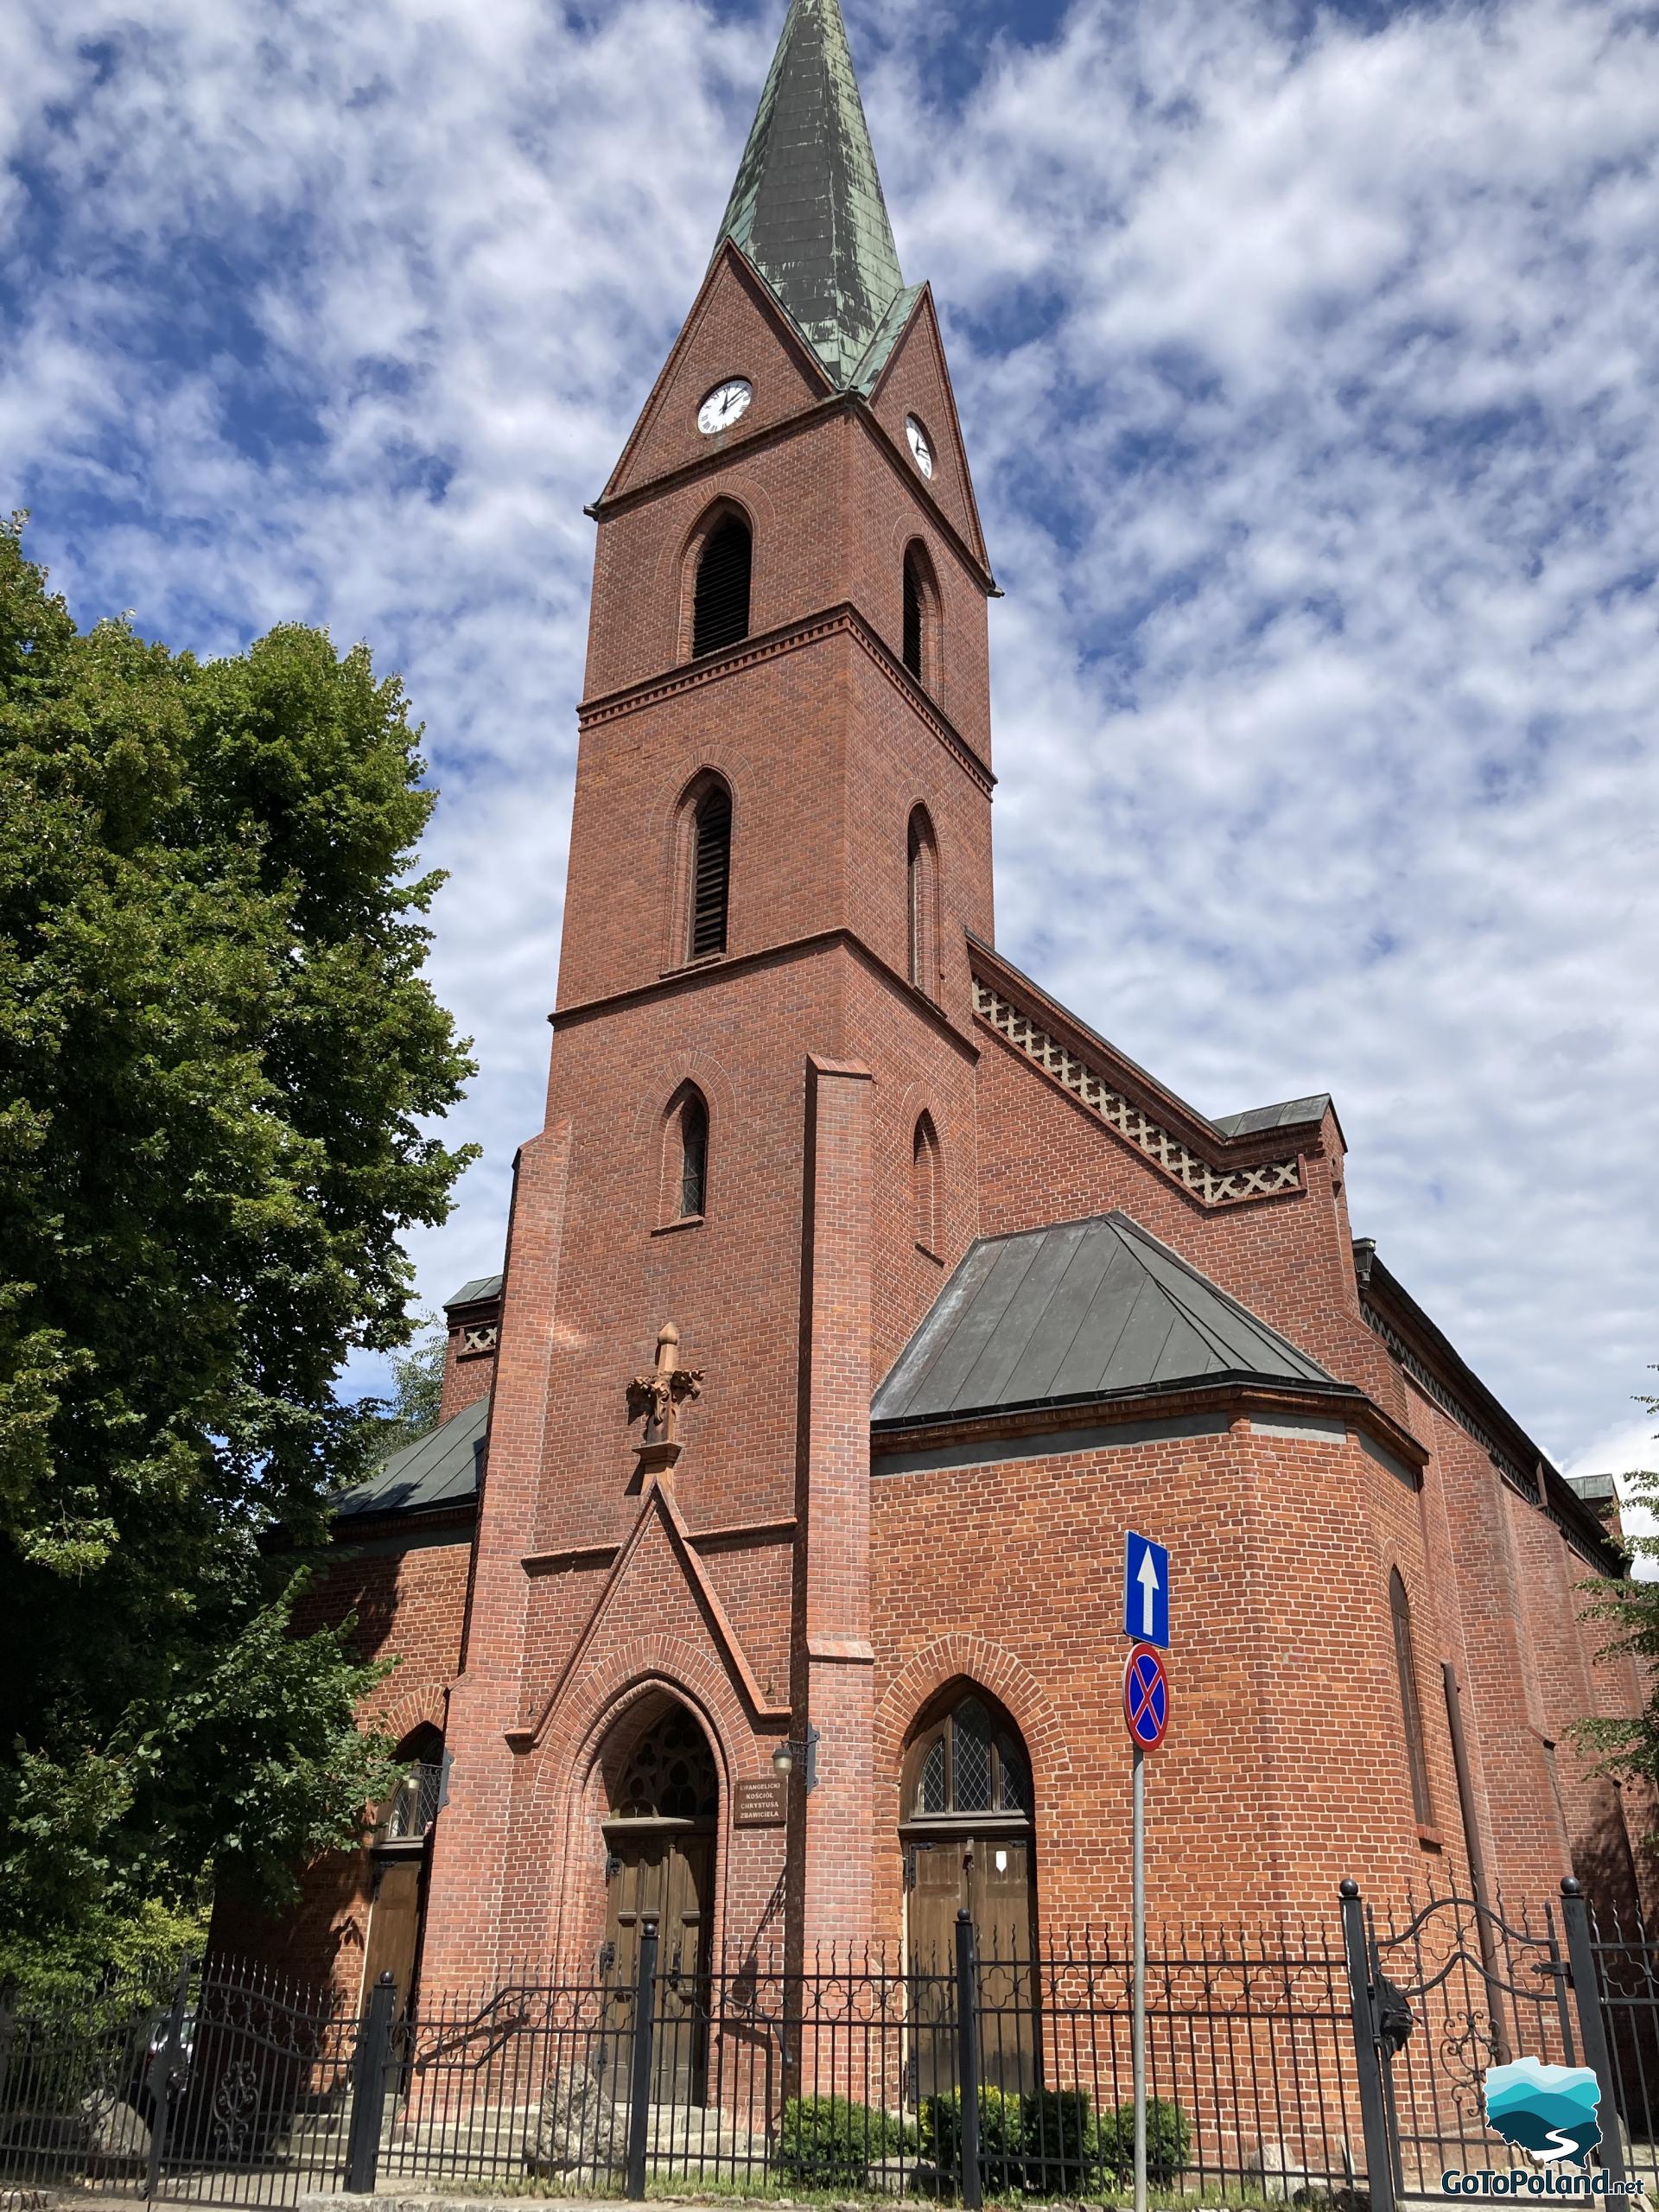 a brick evangelical church